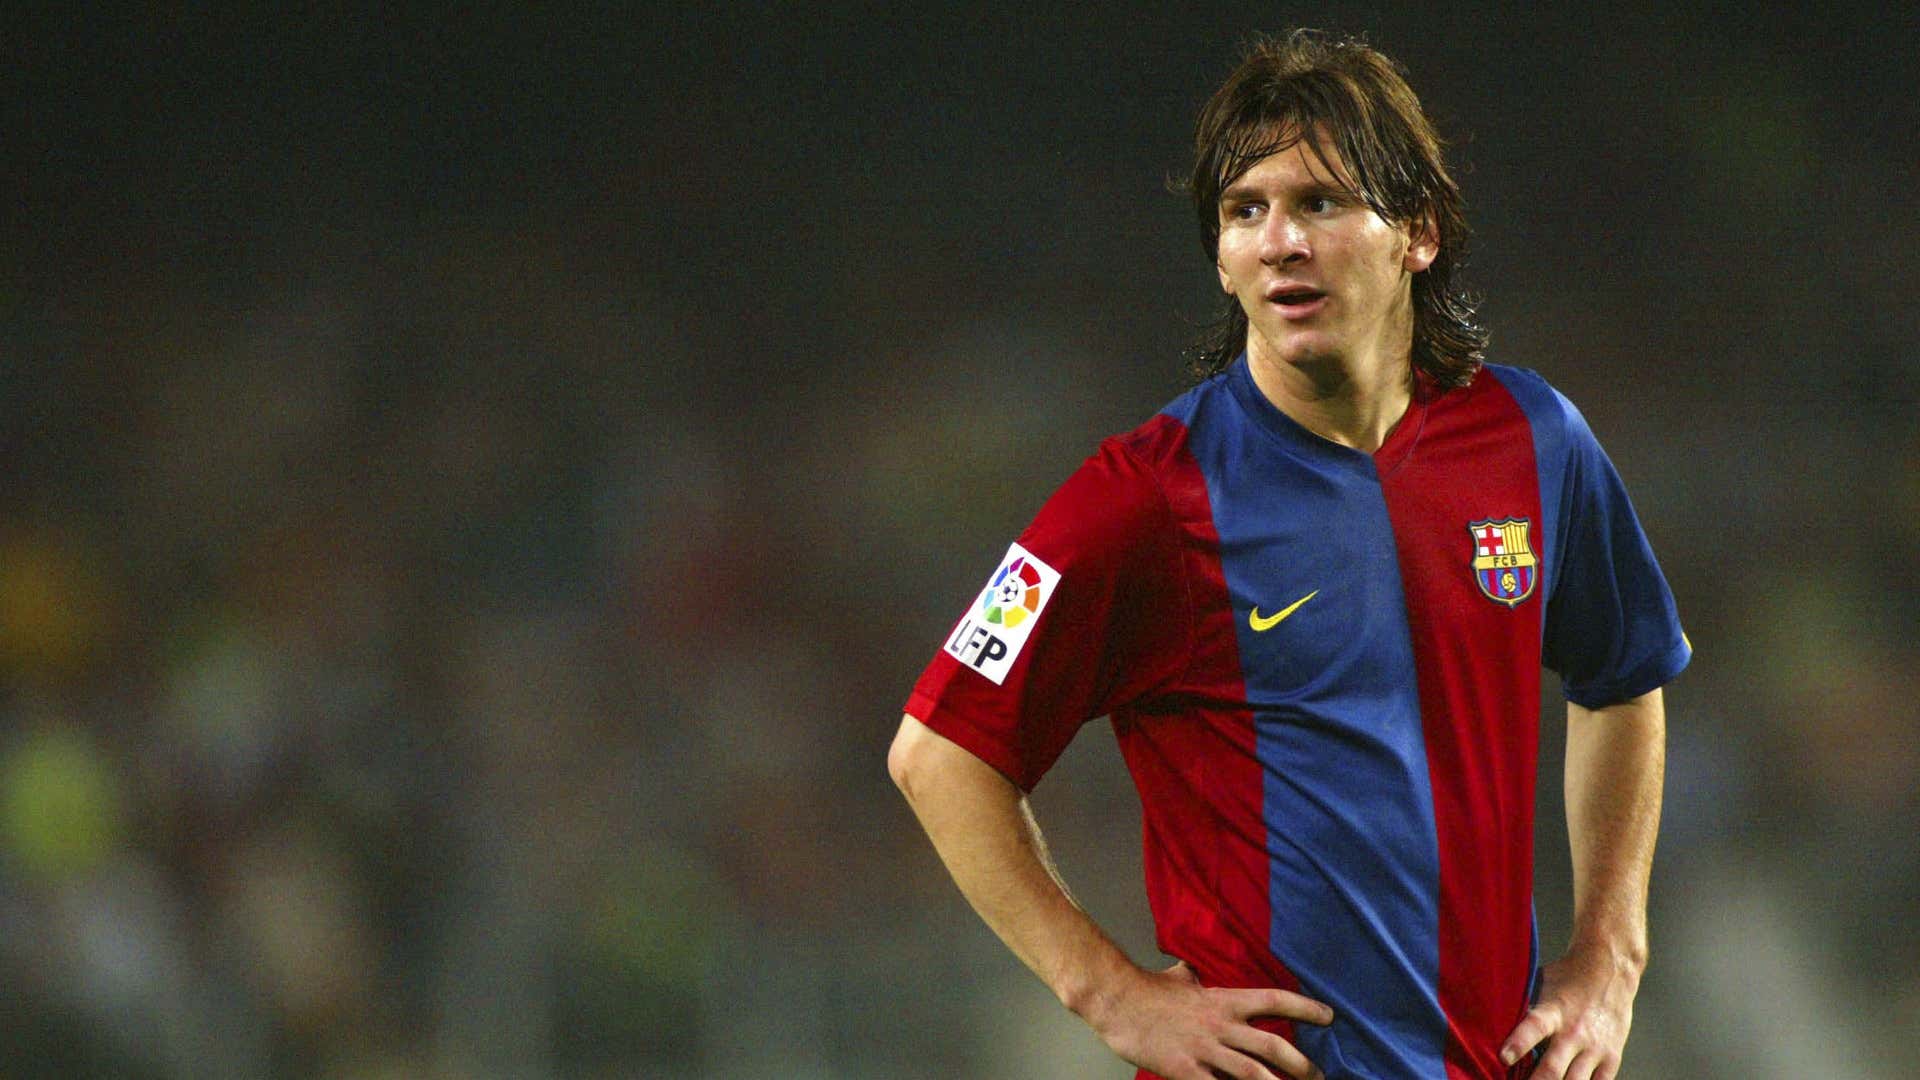 H&S -  2006 Gaya Rambut Lionel Messi